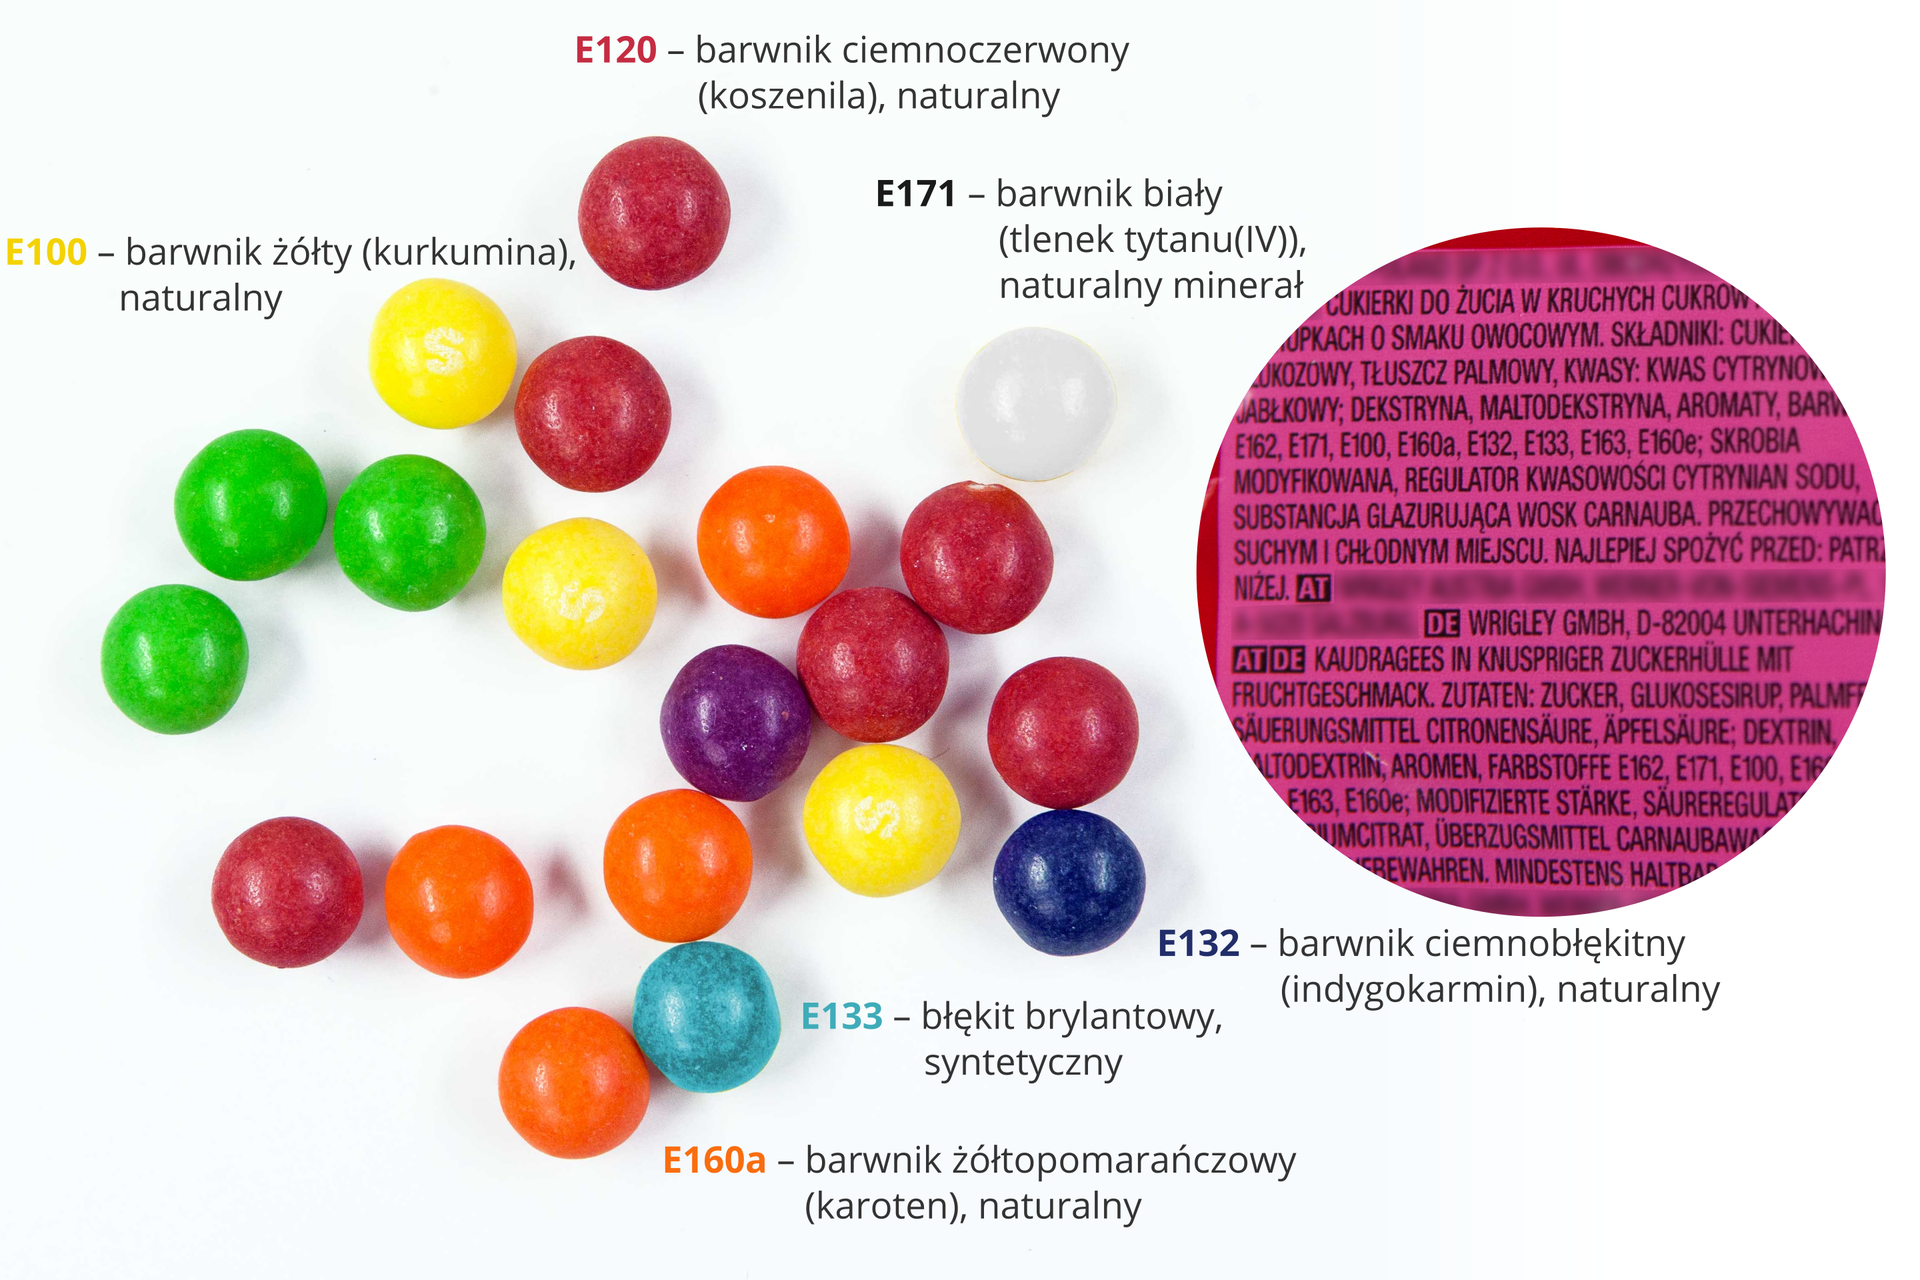 Ikonografika przedstawiająca opakowanie drażetek typu Skittles w miejscu, w którym jest widoczny skład (wykadrowane, z niewidocznymi nazwami producenta, dystrybutora, nazwą produktu itp) oraz rozsypane drażetki o różnych kolorach, przy odpowiednich kolorach informacje o barwnikach.